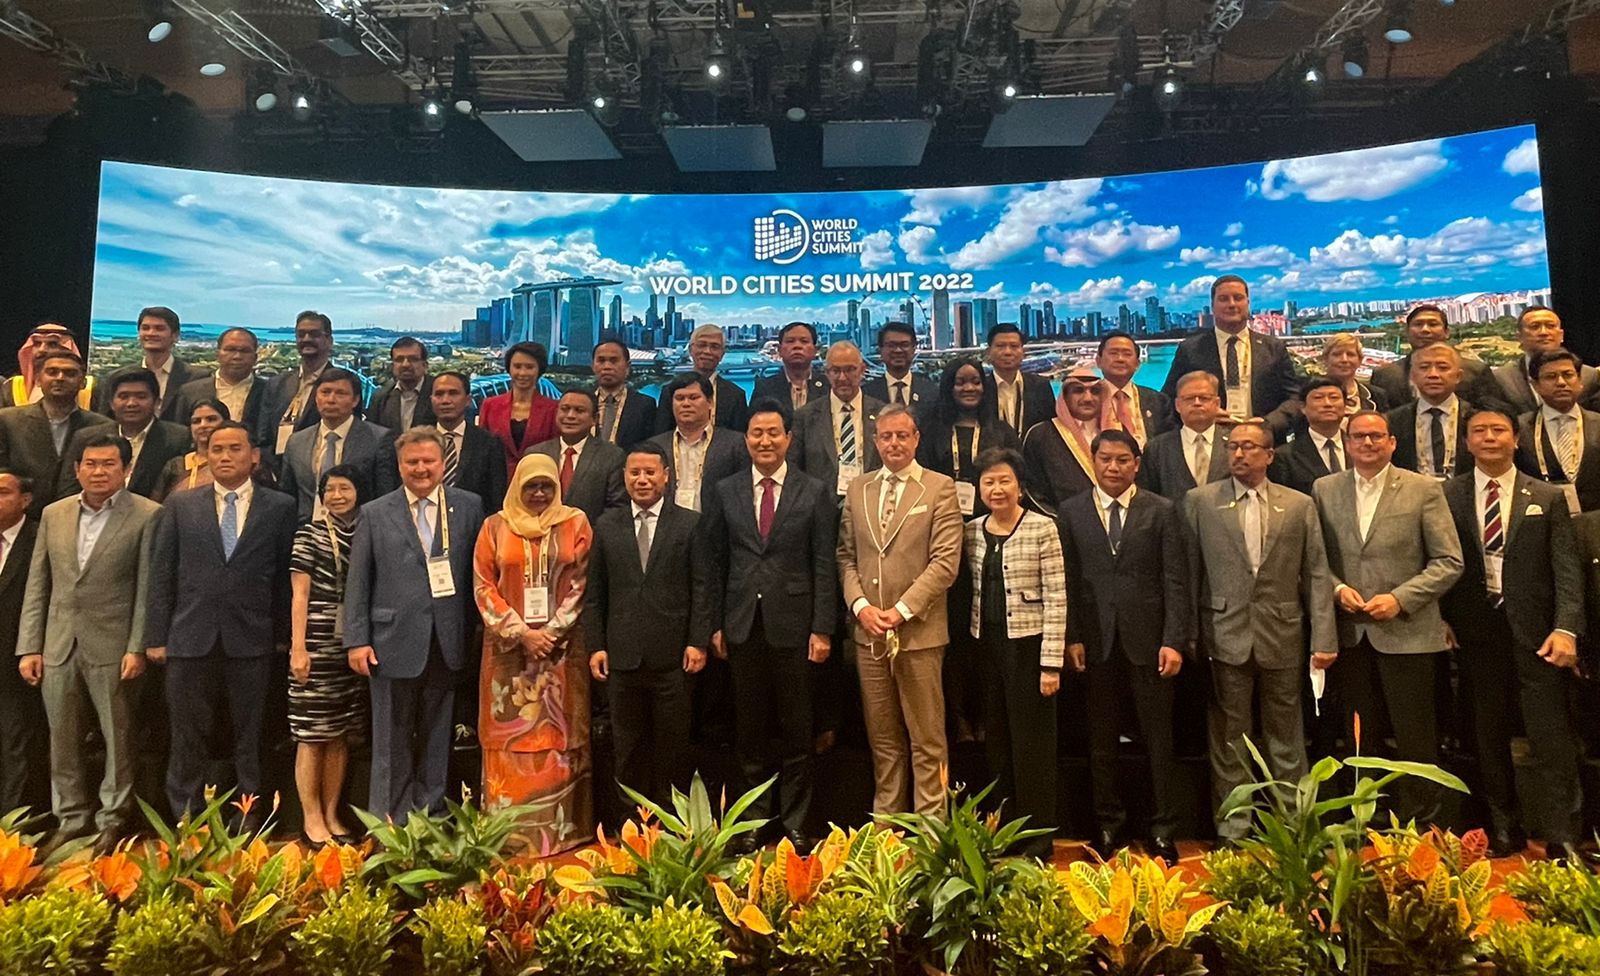 Wali Kota Makassar Diundang Khusus Pada World City Summit 2022 di Singapura